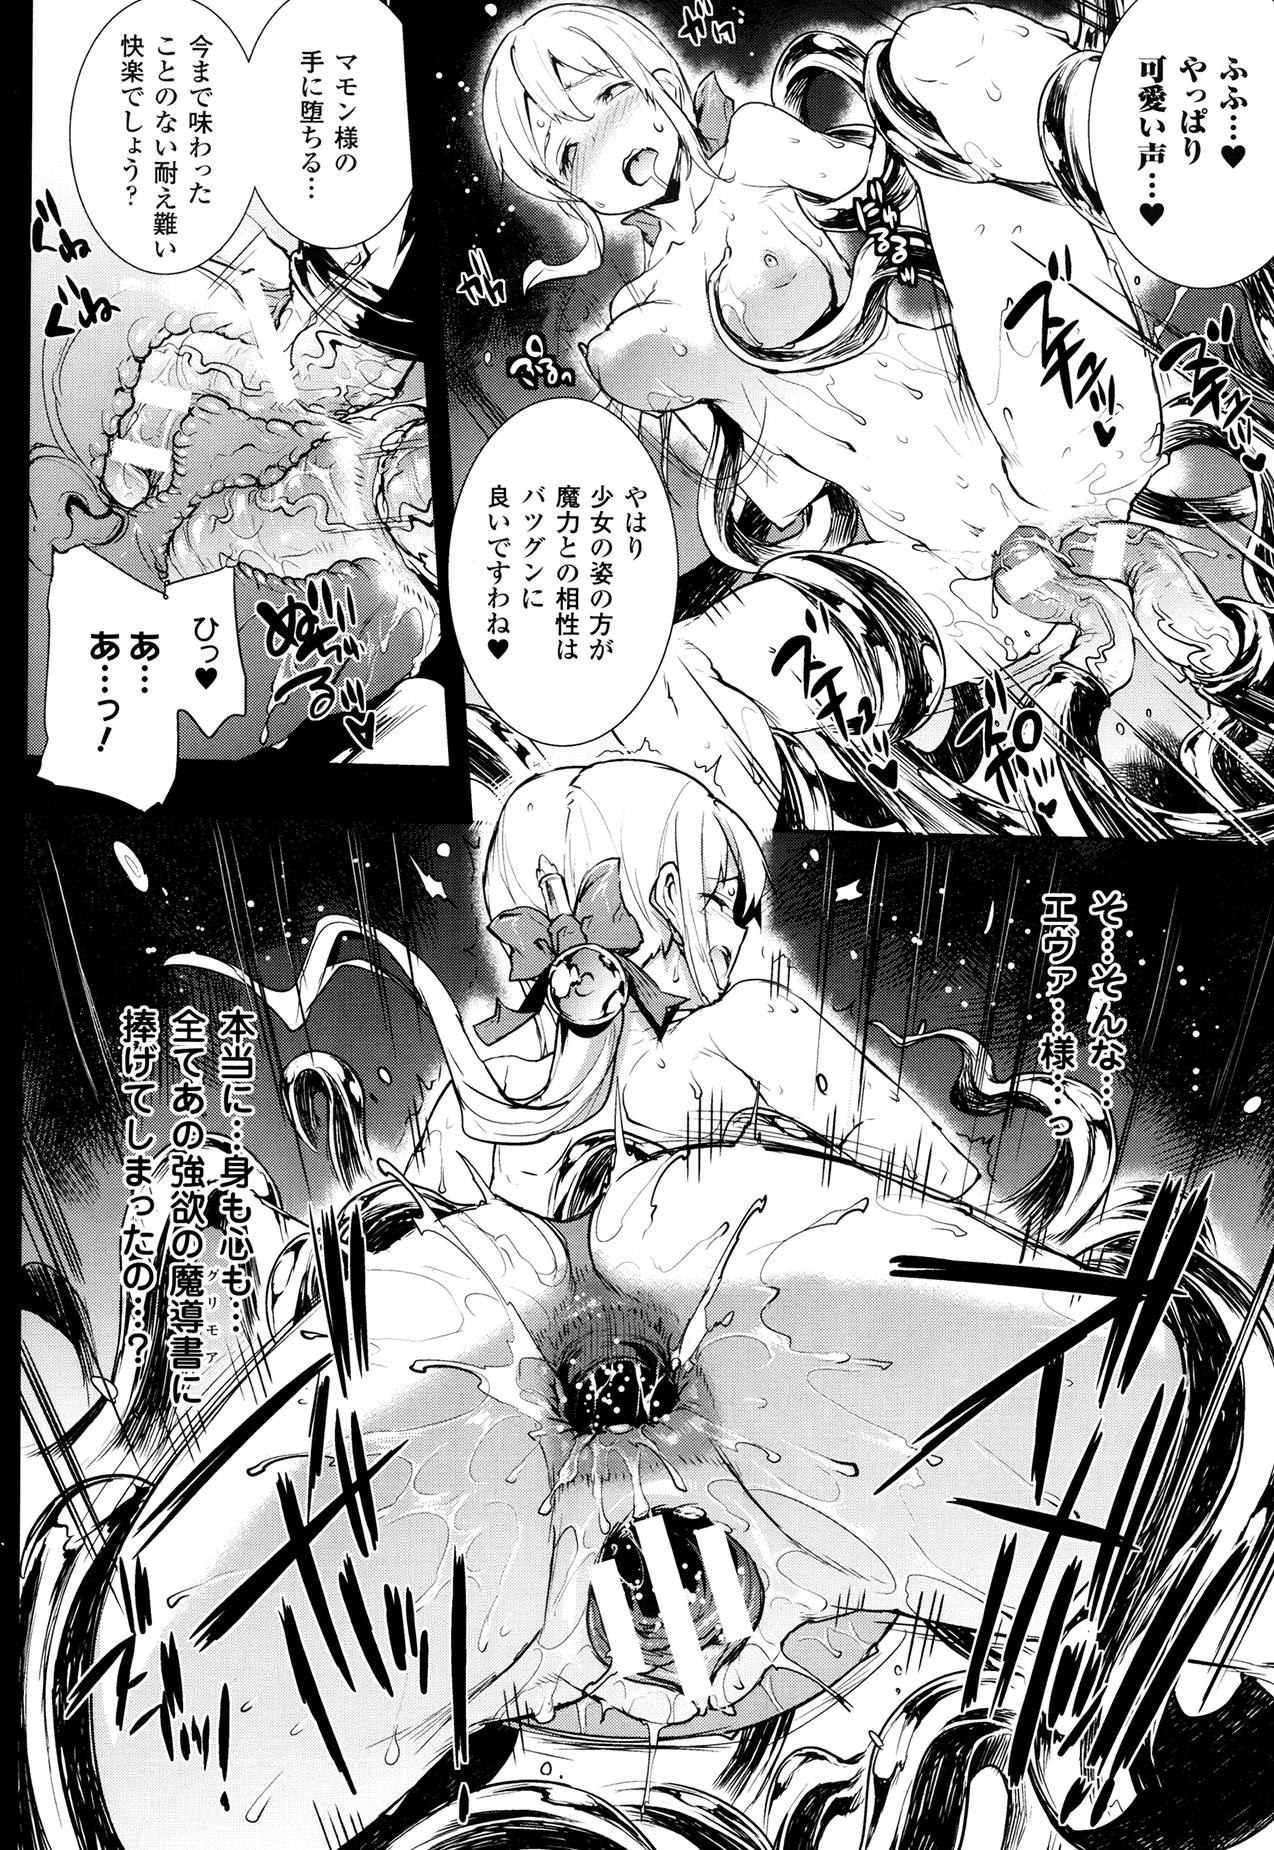 [Erect Sawaru] Shinkyoku no Grimoire -PANDRA saga 2nd story- Ch 07-9.5 41